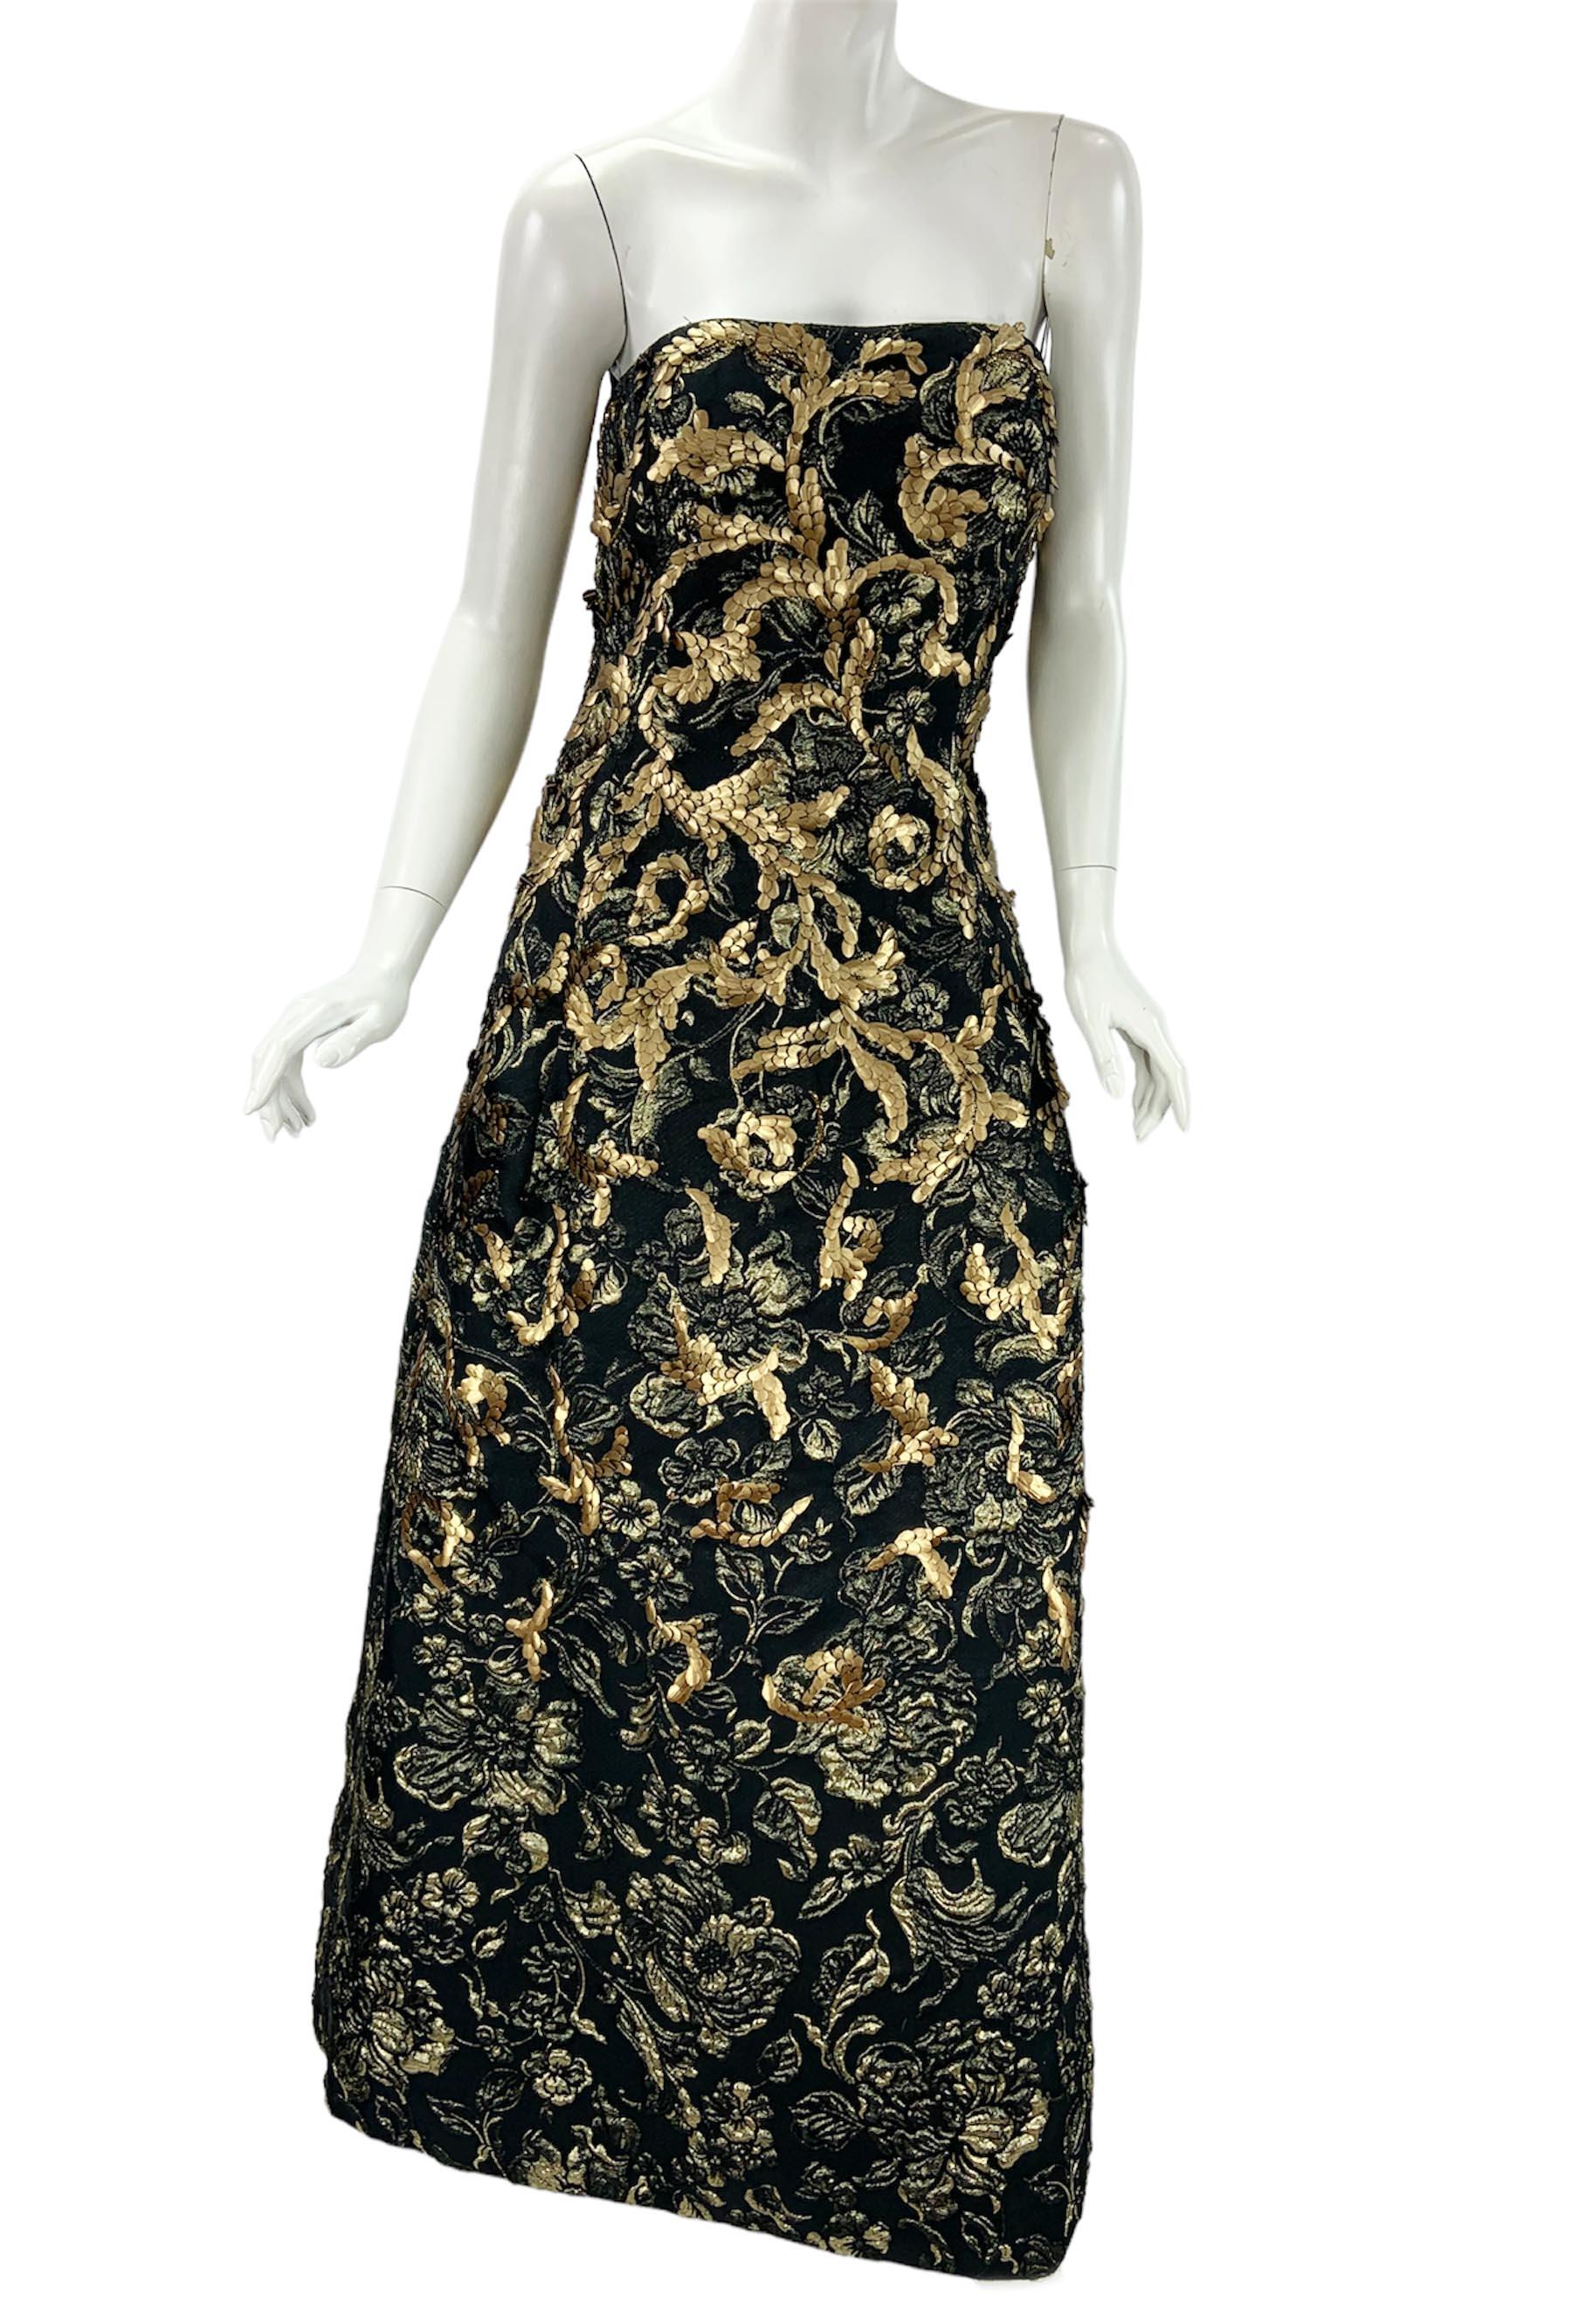 Oscar de la Renta FW 2014 Runway Museum Red Carpet Black Gold Gown Dress L / XL For Sale 5